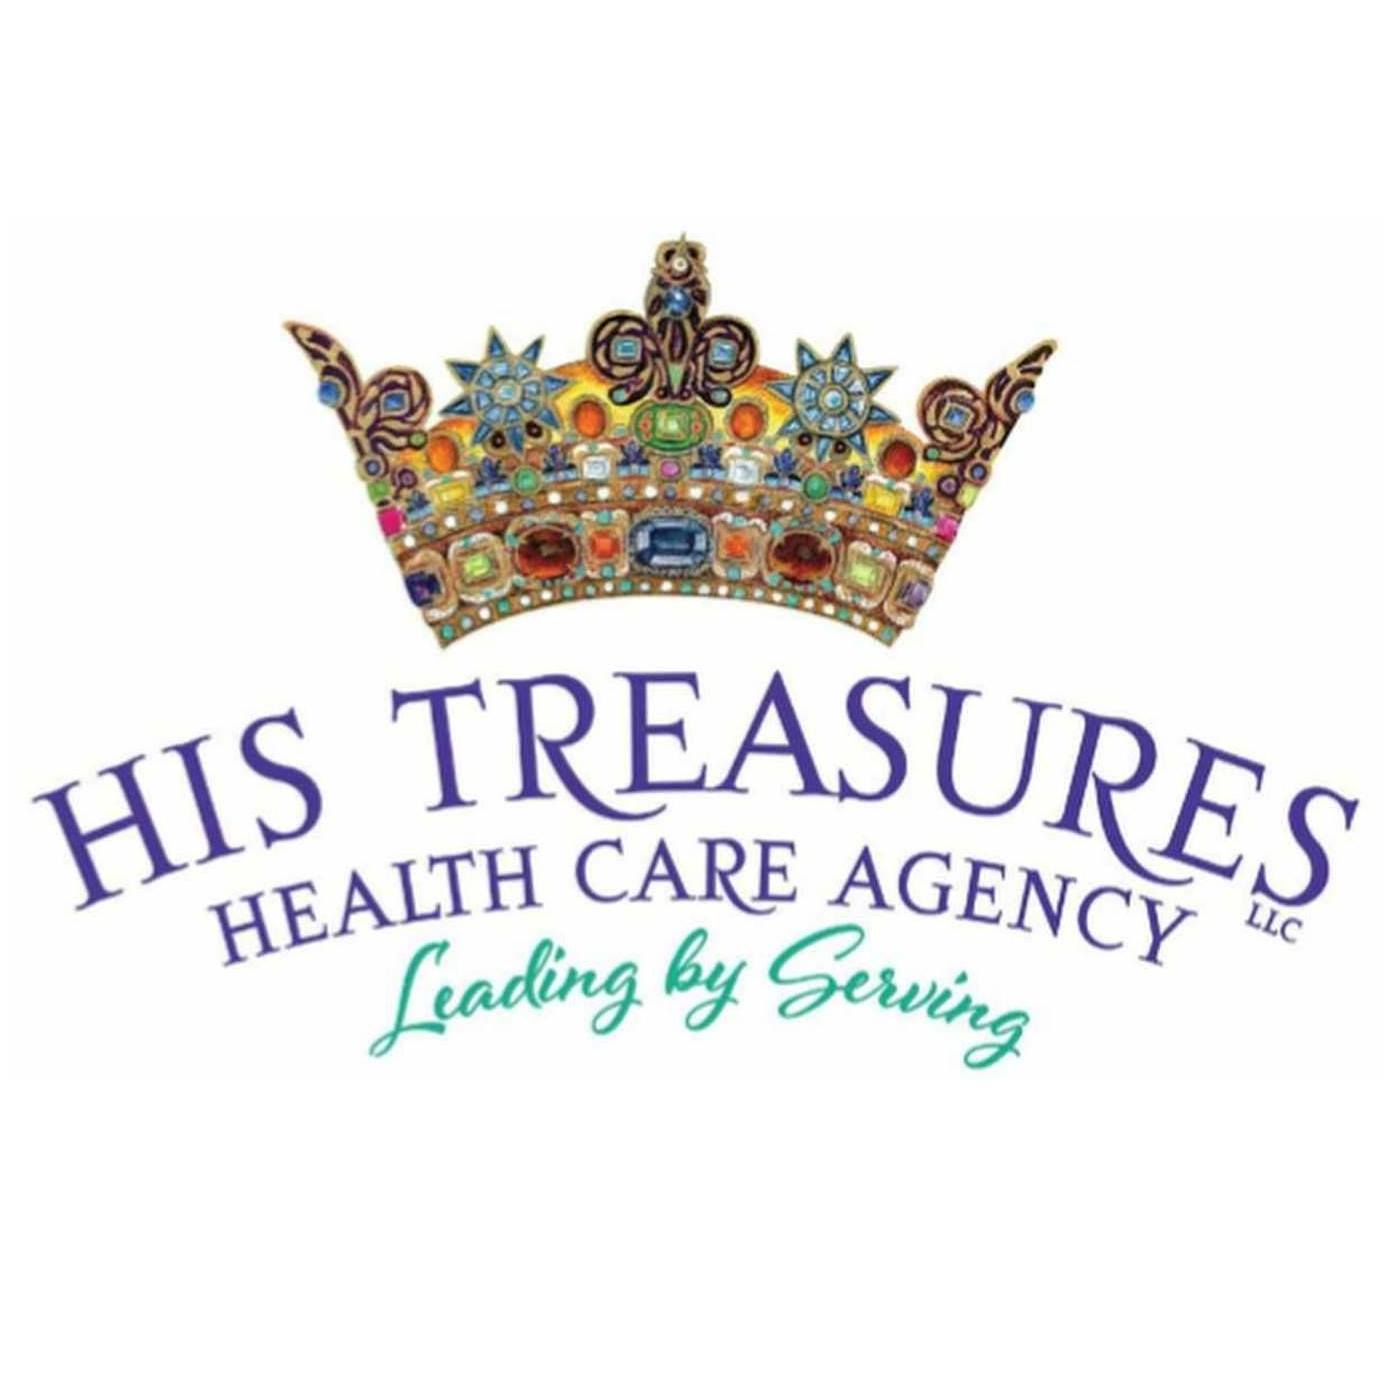 his-treasures-healthcare--image-1